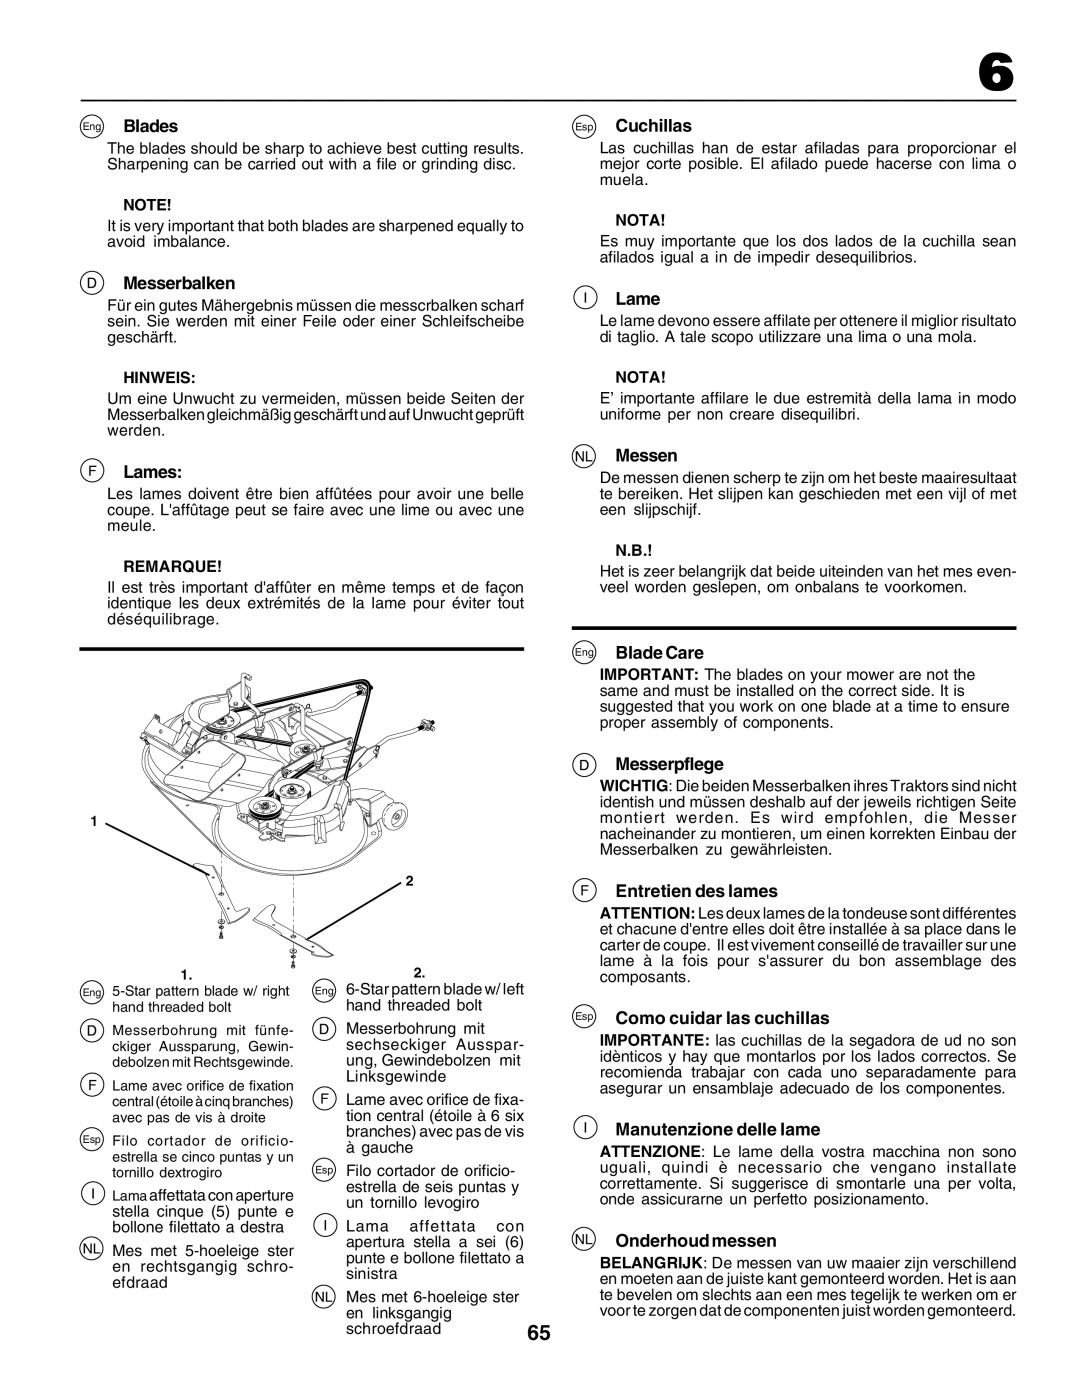 Husqvarna CT135 instruction manual Eng Blades, Messerbalken, FLames, Esp Cuchillas, NL Messen, Eng Blade Care, Messerpflege 